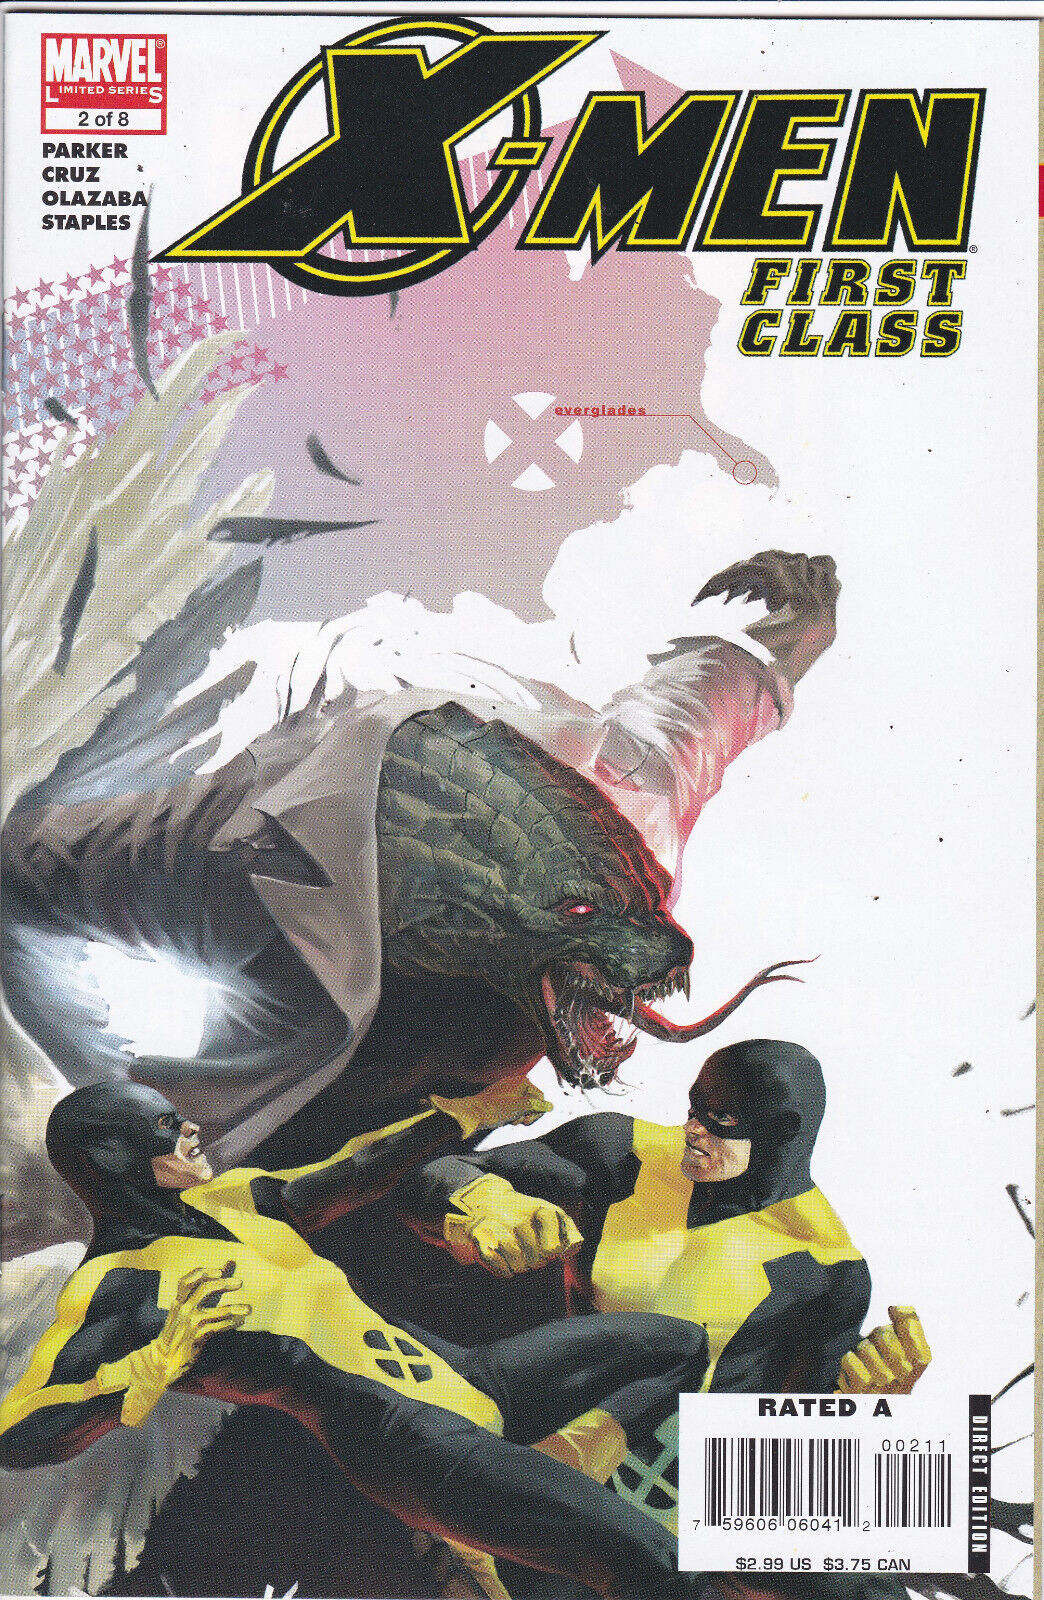 X-Men: First Class #2, Vol. 1 (2006-2007) Marvel Comics,High Grade